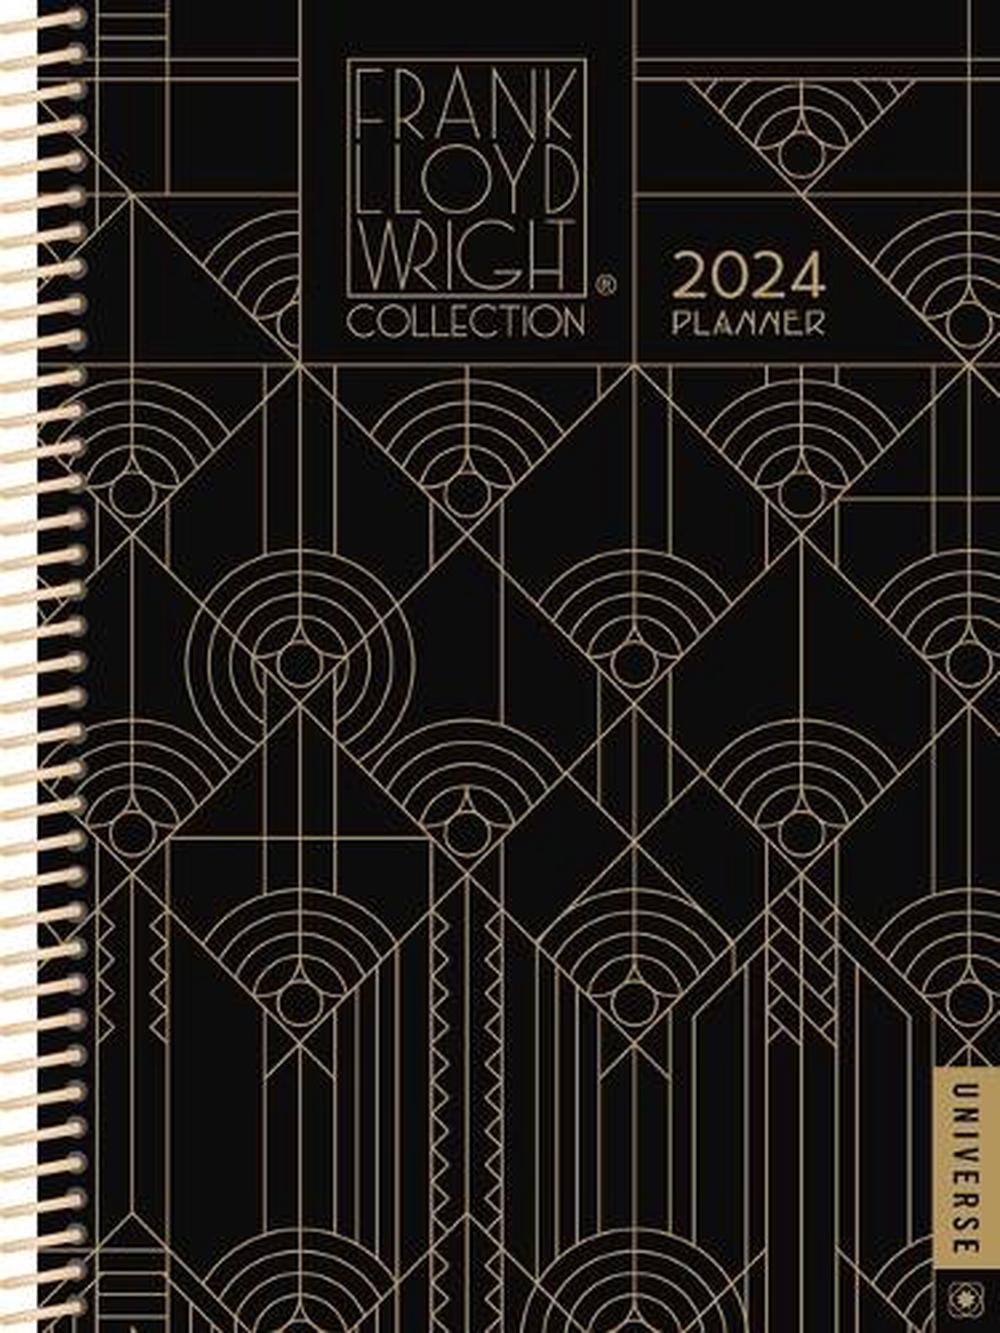 Frank Lloyd Wright 12Month 2024 Planner Calendar by Frank Lloyd Wright